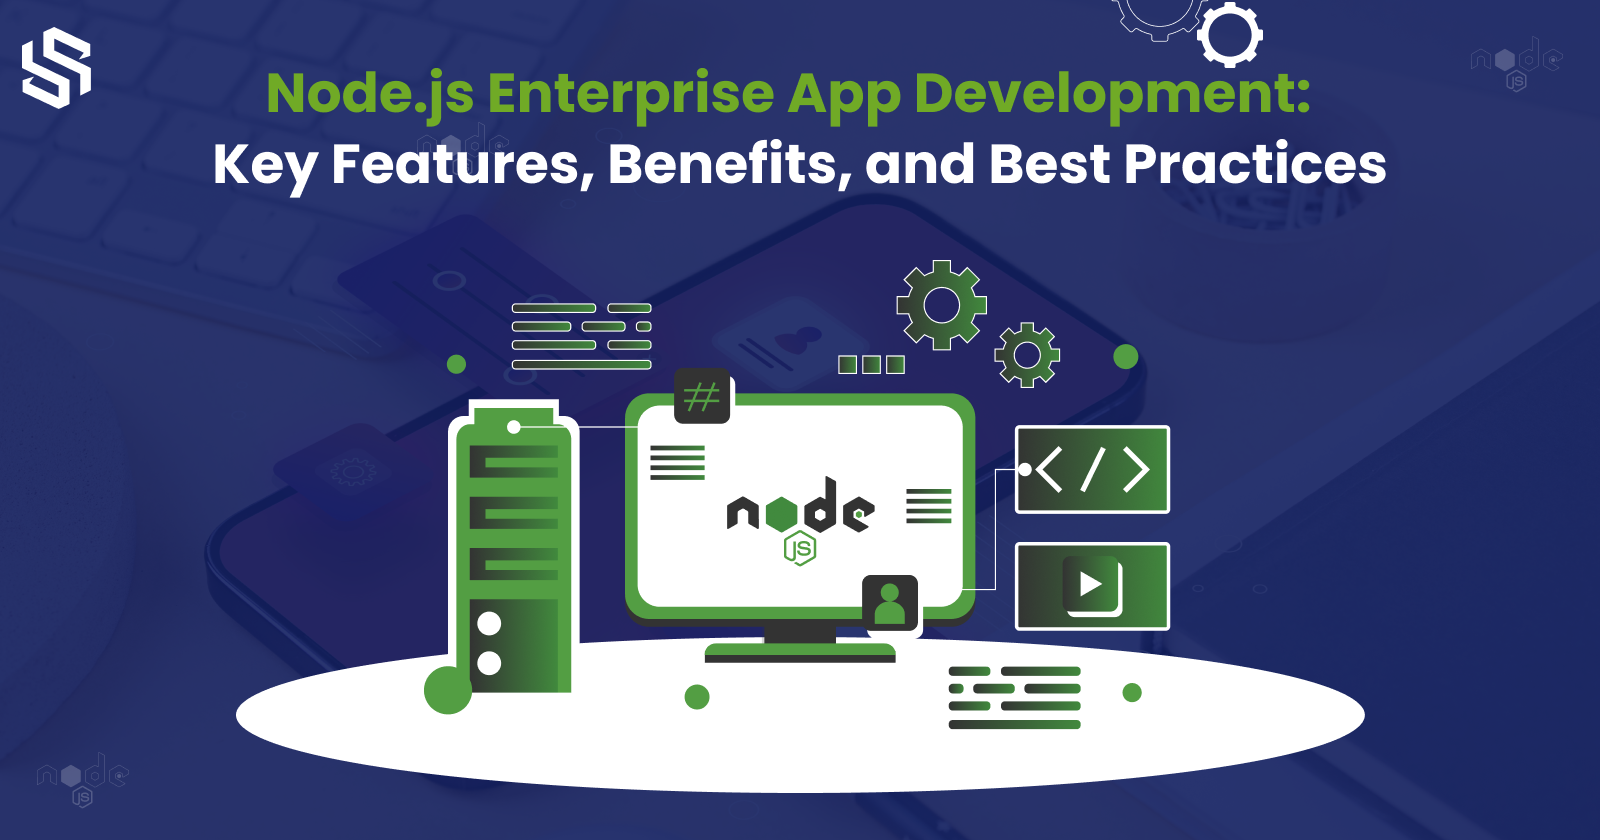 Node.js Enterprise App Development Key Features, Benefits, and Best Practices